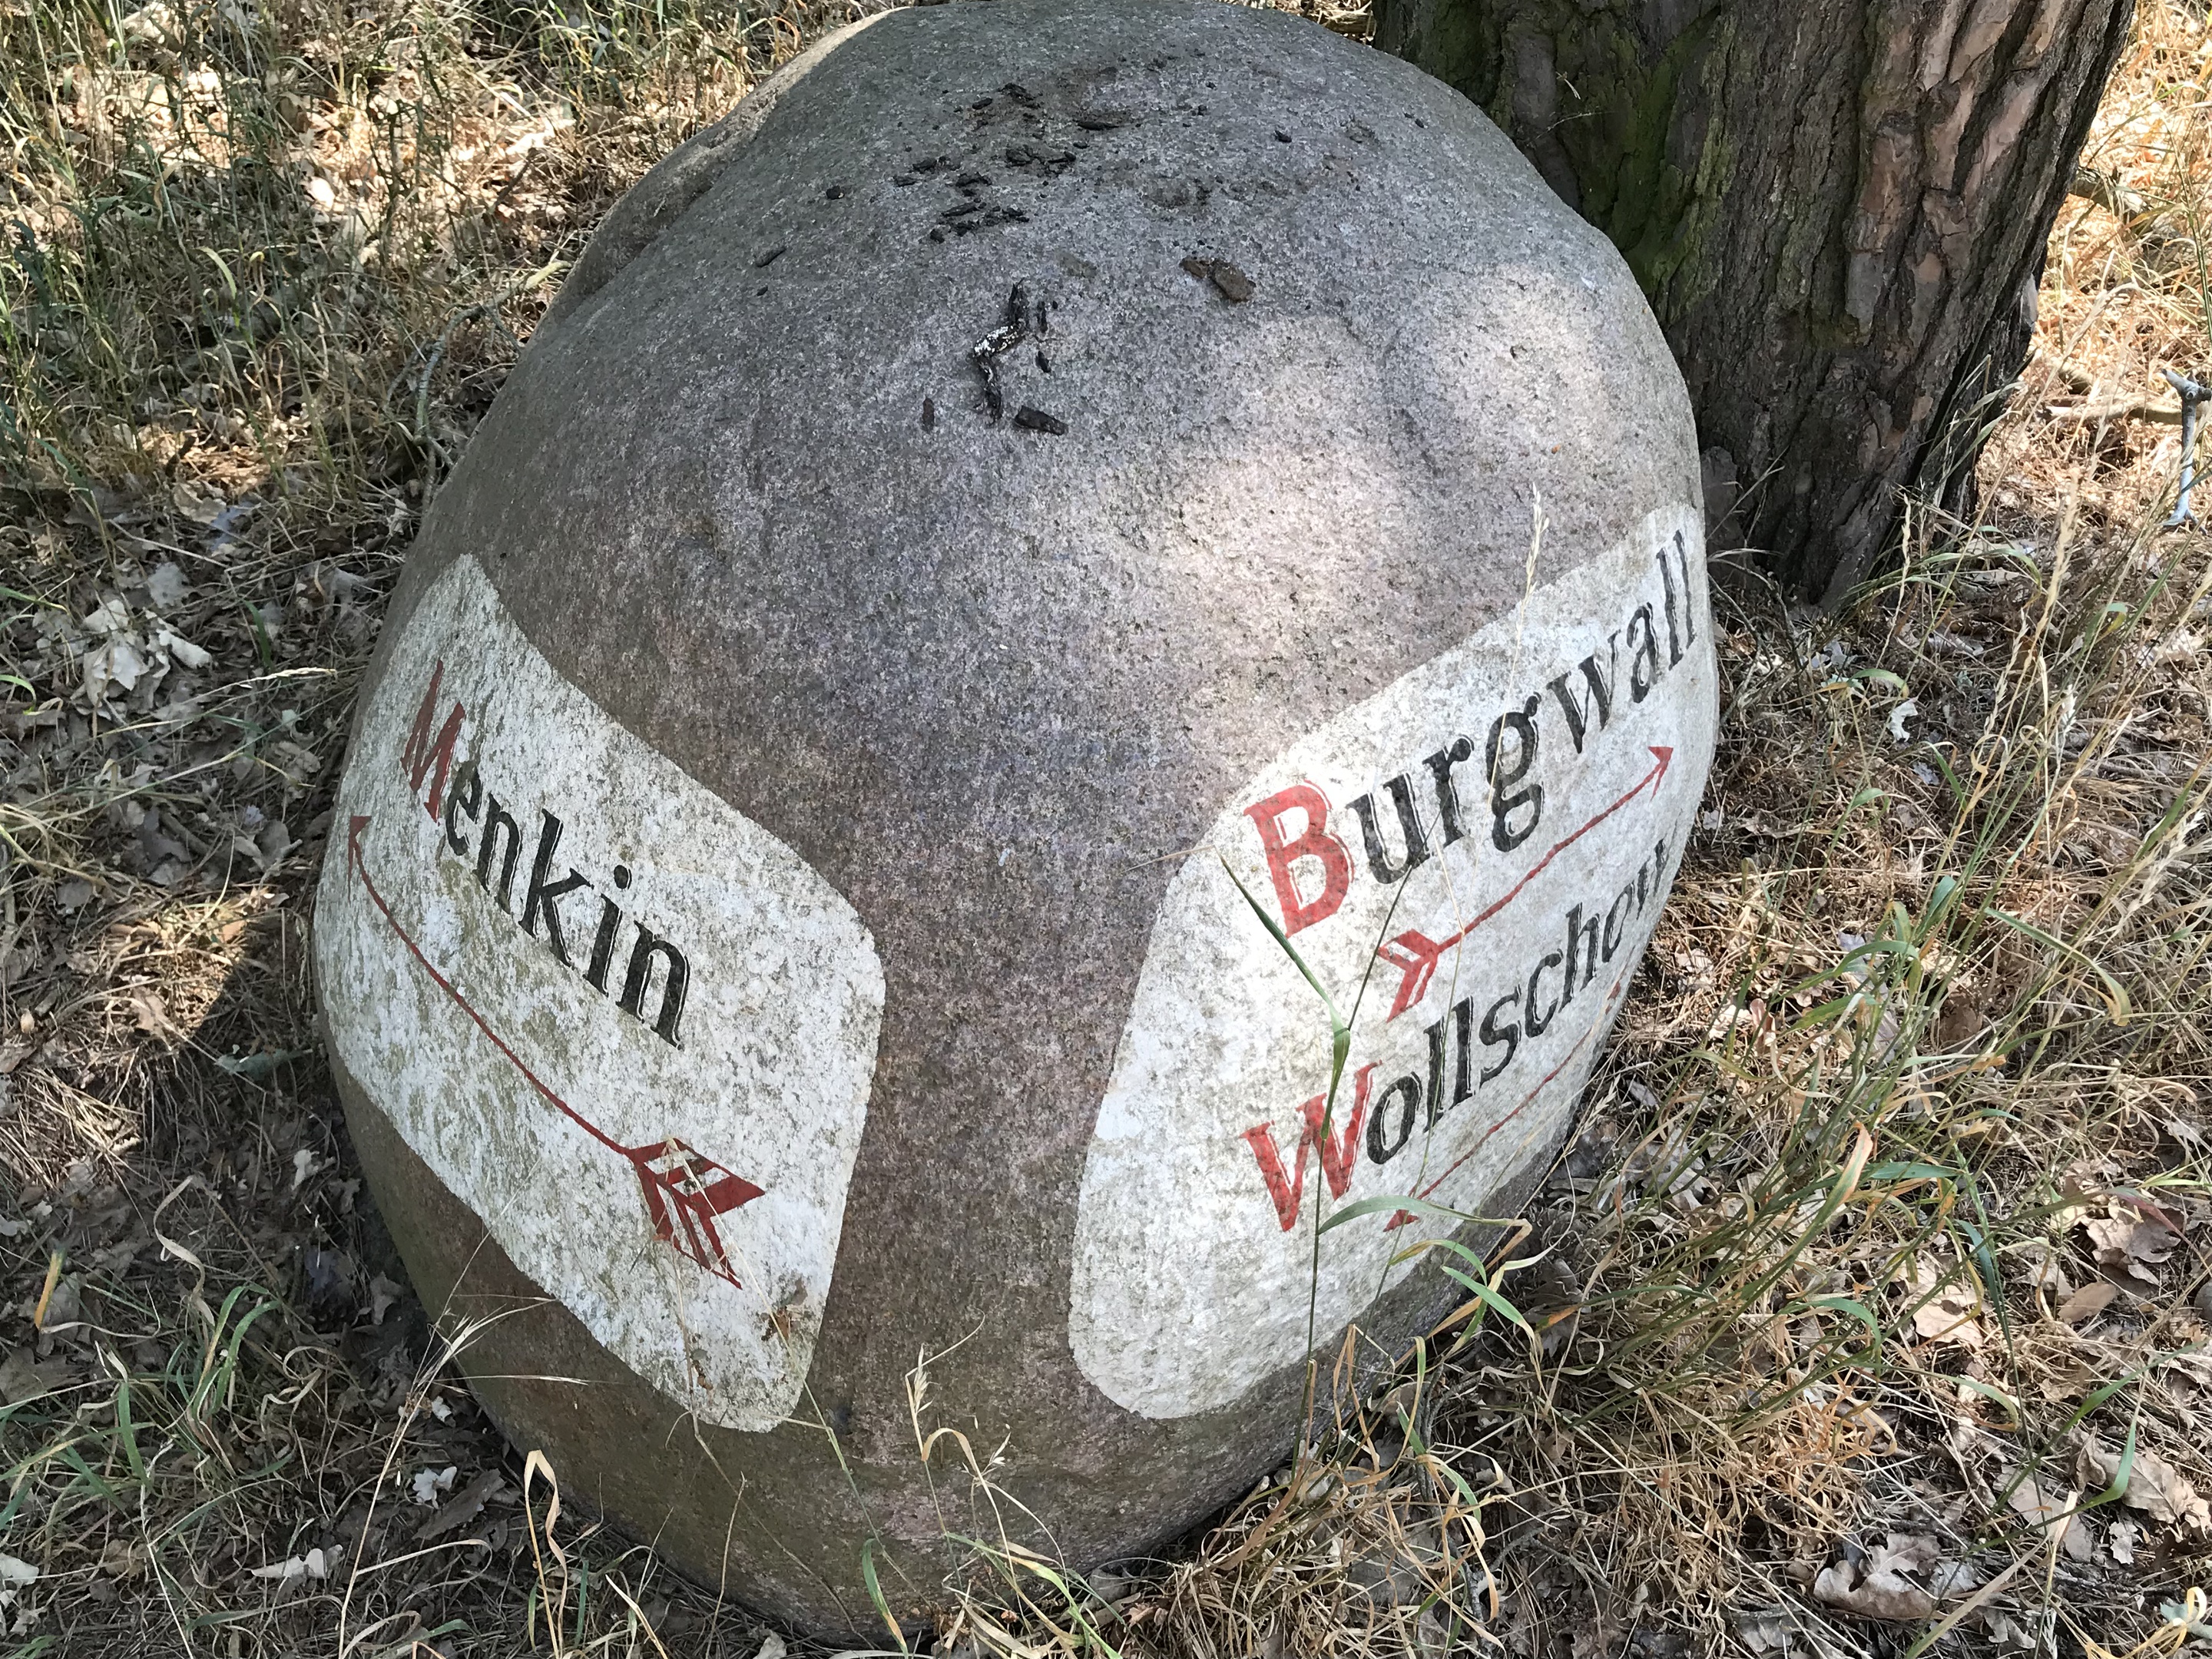 Stein am Wegesrand Burgwall Wollschow, Foto: Anet Hoppe, Lizenz: Anet Hoppe